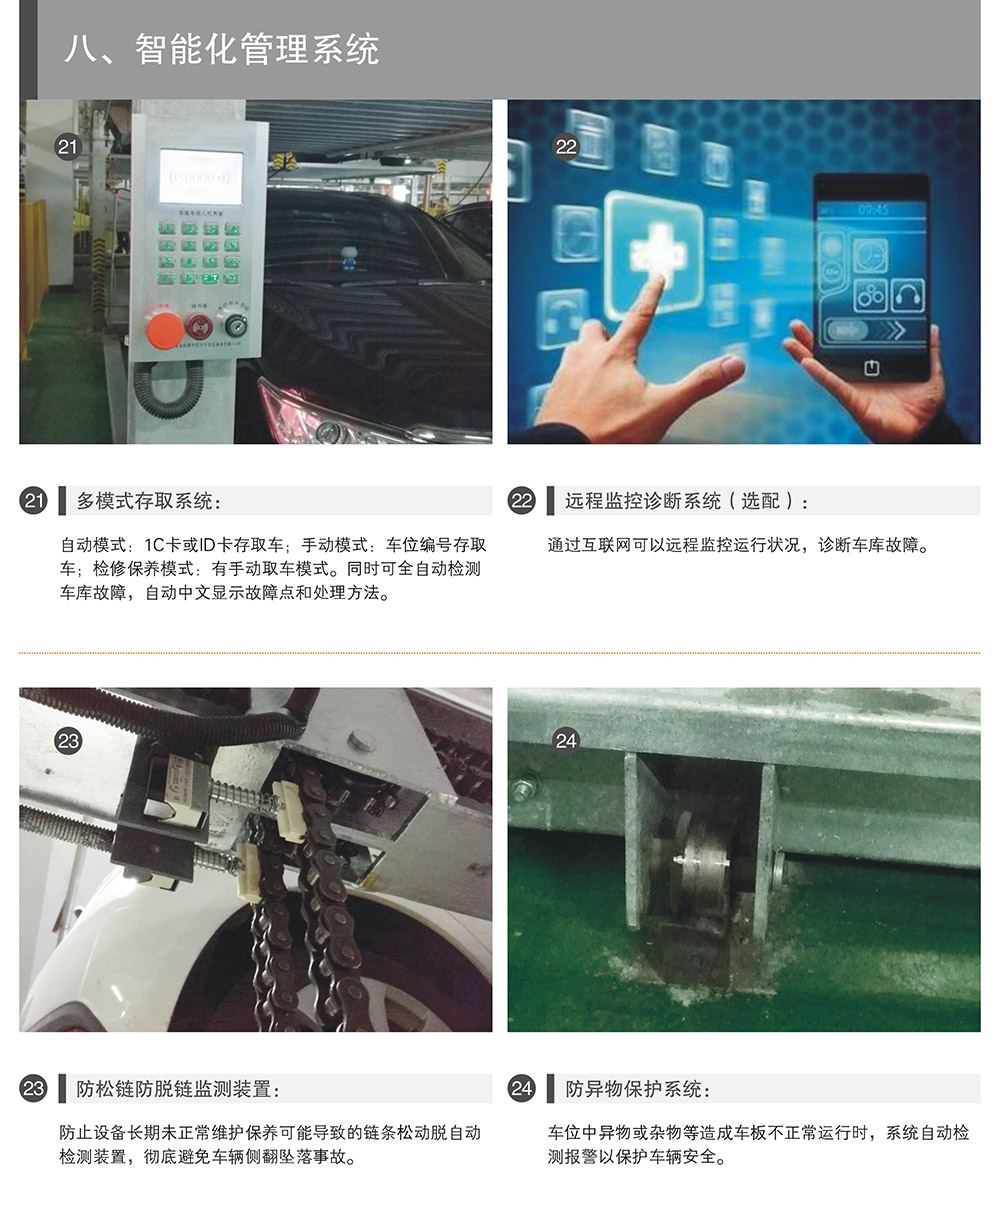 重庆四至六层PSH4-6升降横移式立体停车设备智能化管理系统.jpg